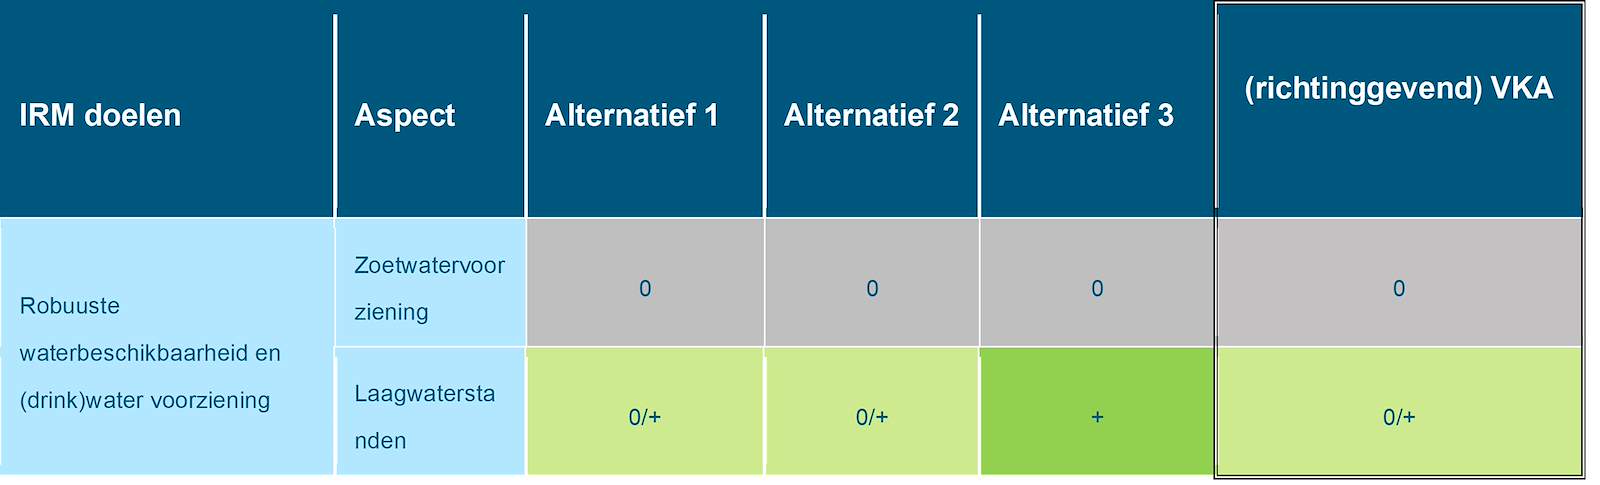 Deze tabel laat de totaalbeoordeling voor het doelbereik van het beoordelingsaspect robuuste zoetwaterbeschikbaarheid zien voor de Maas, voor de drie alternatieven en het richtinggevend VKA. Deze beoordeling is toegelicht in de tekst voorafgaande aan de tabel.